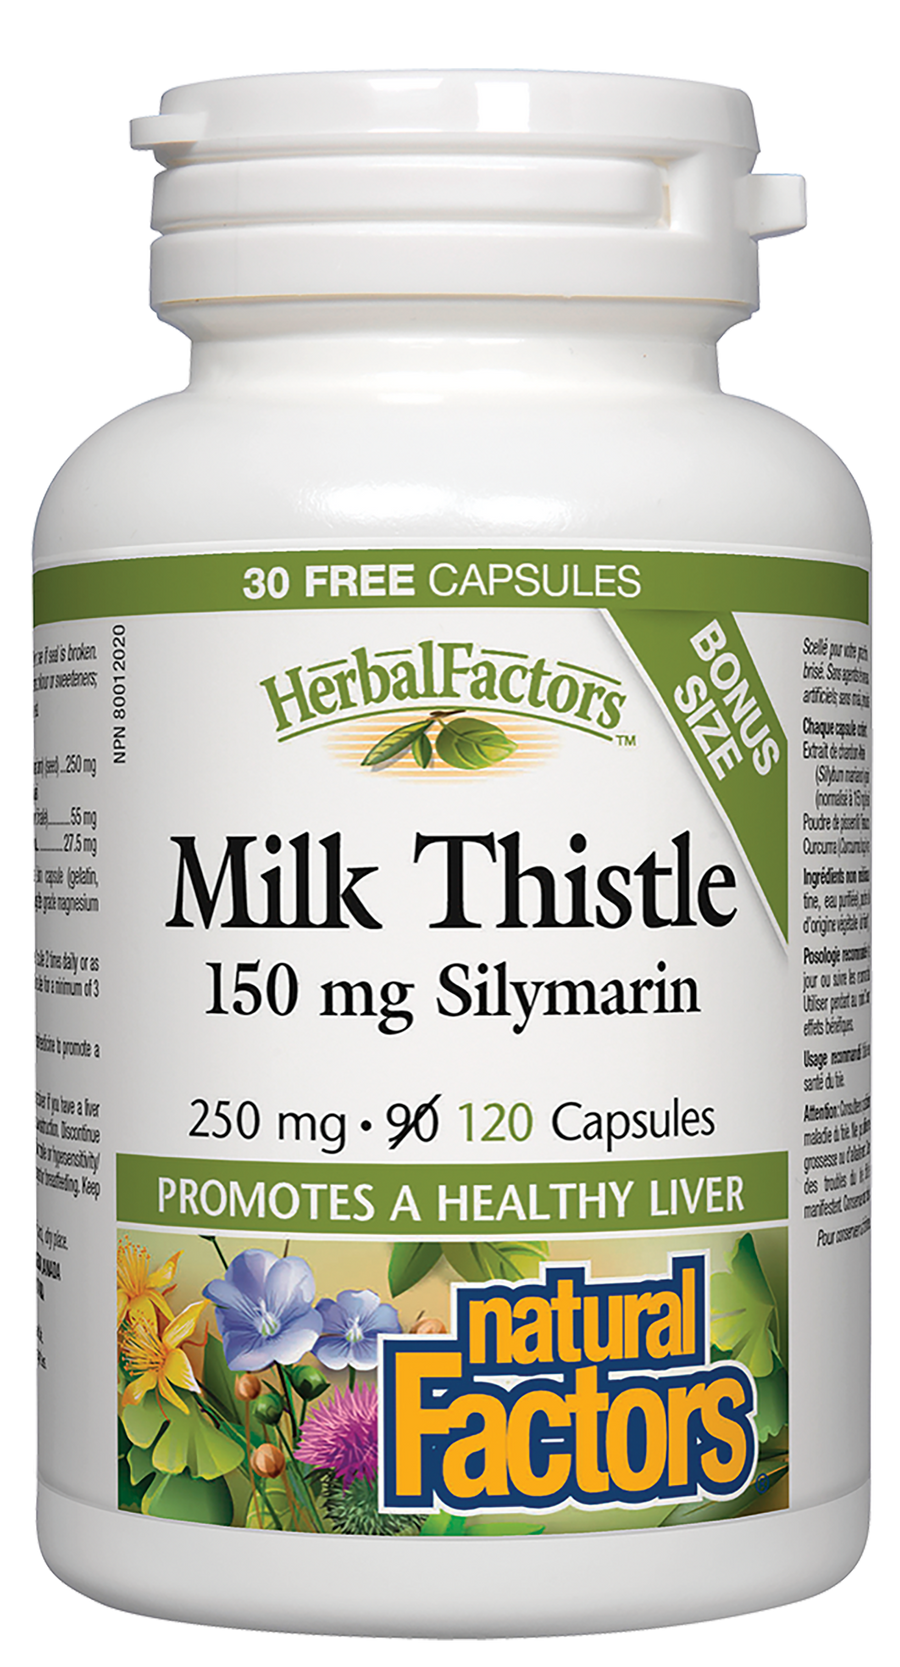 Natural Factors Milk Thistle, HerbalFactorsn 250 mg 120 Capsules